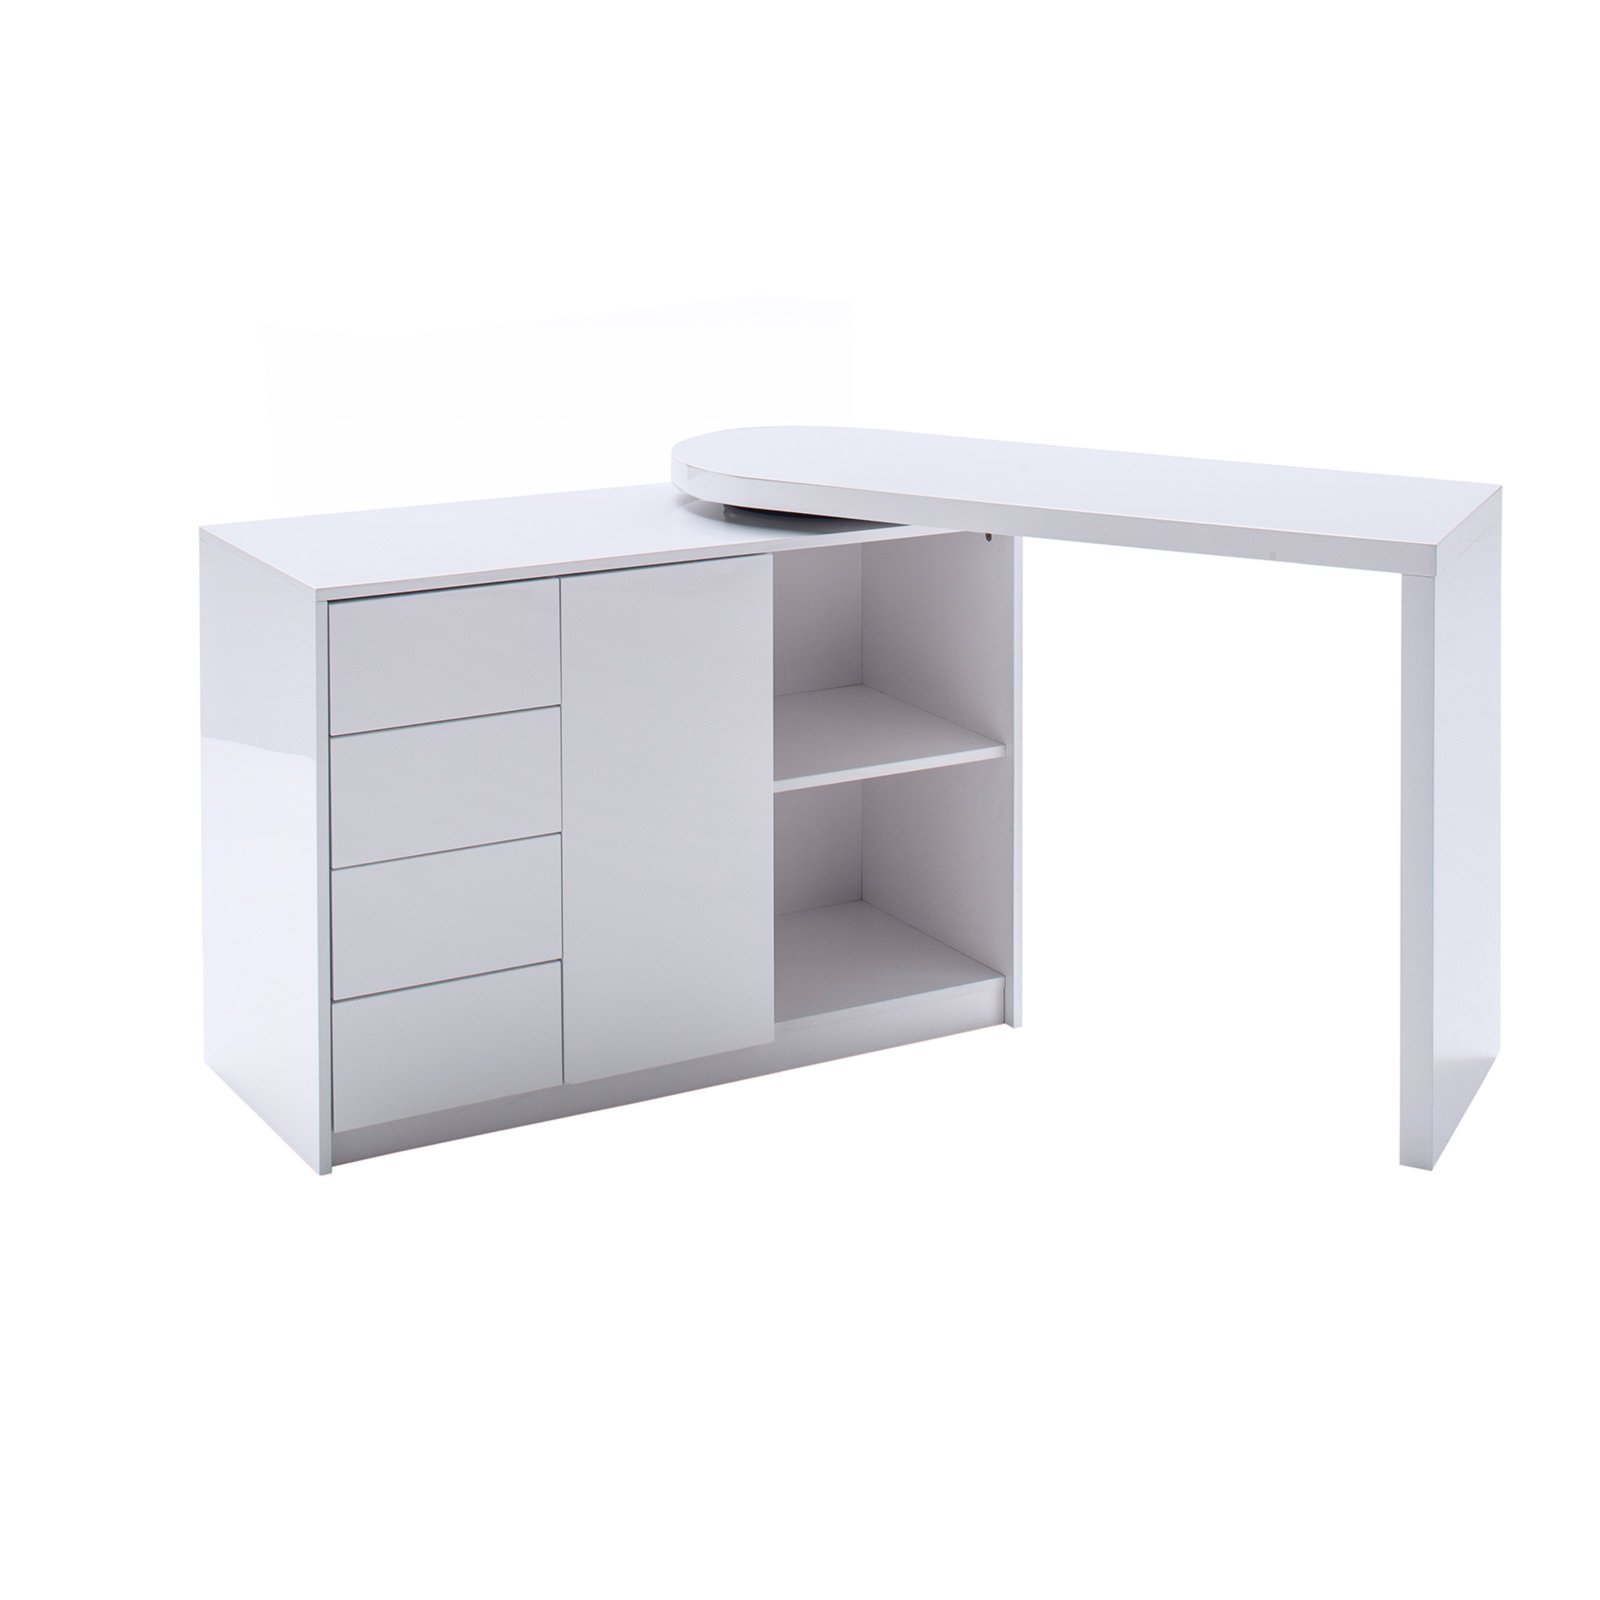 Schreibtisch - - bei hochglanz weiß | Online - ROLLER kaufen schwenkbar